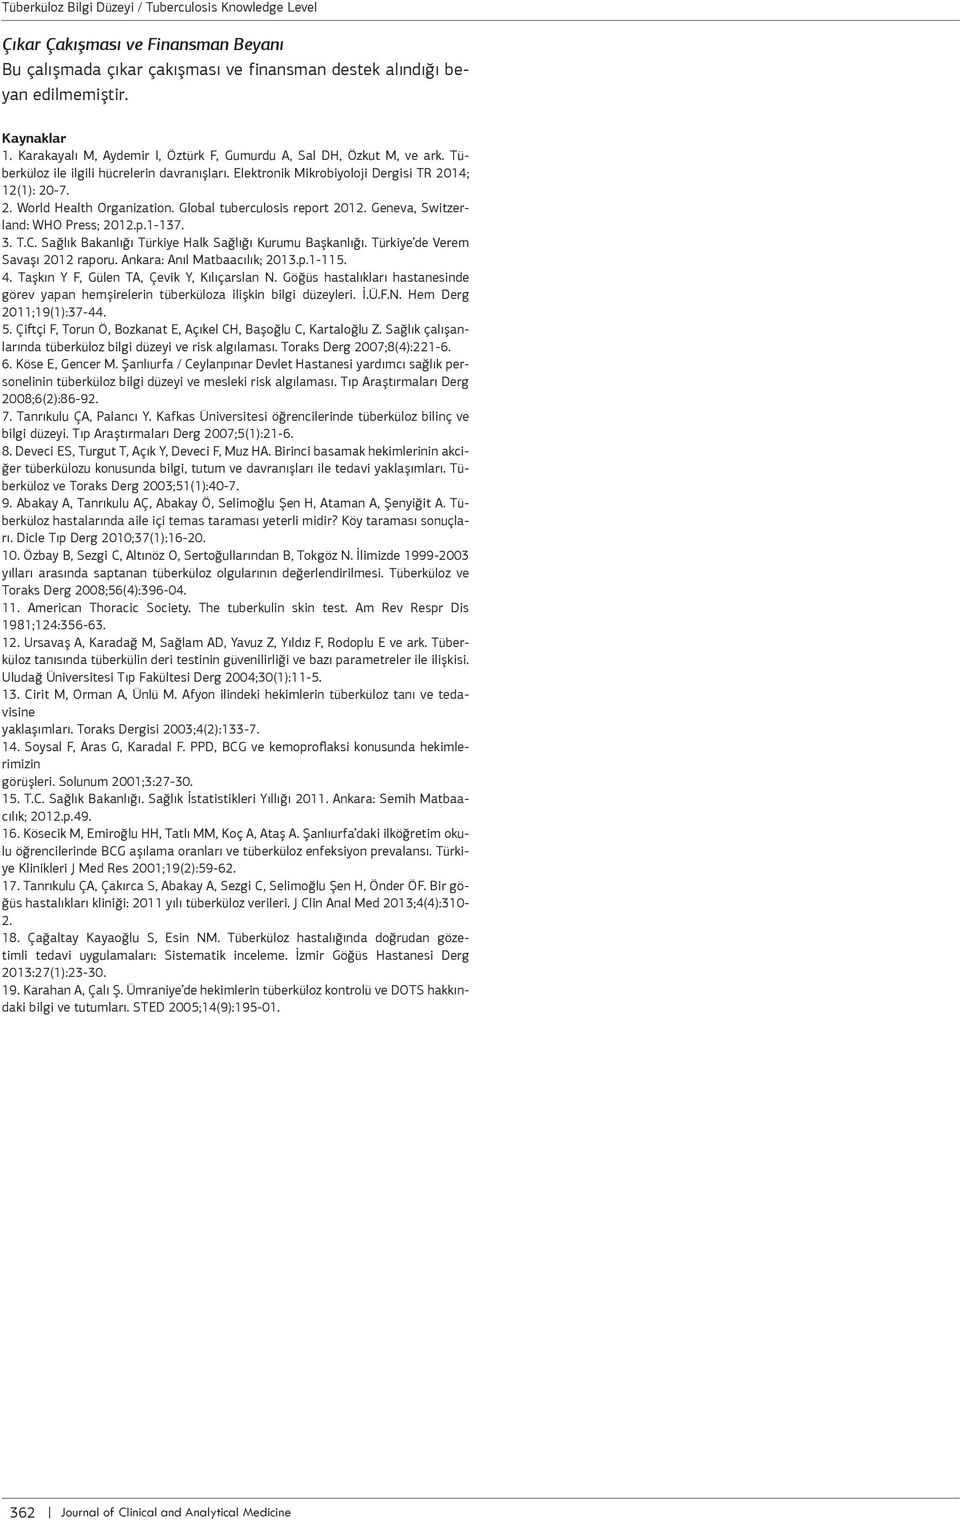 Sğlık Bknlığı Tükiye Hlk Sğlığı Kuumu Bşknlığı. Tükiye de Veem Svşı 2012 pou. Ank: Anıl Mtbcılık; 2013.p.1-115. 4. Tşkın Y F, Gülen TA, Çevik Y, Kılıçsln N.